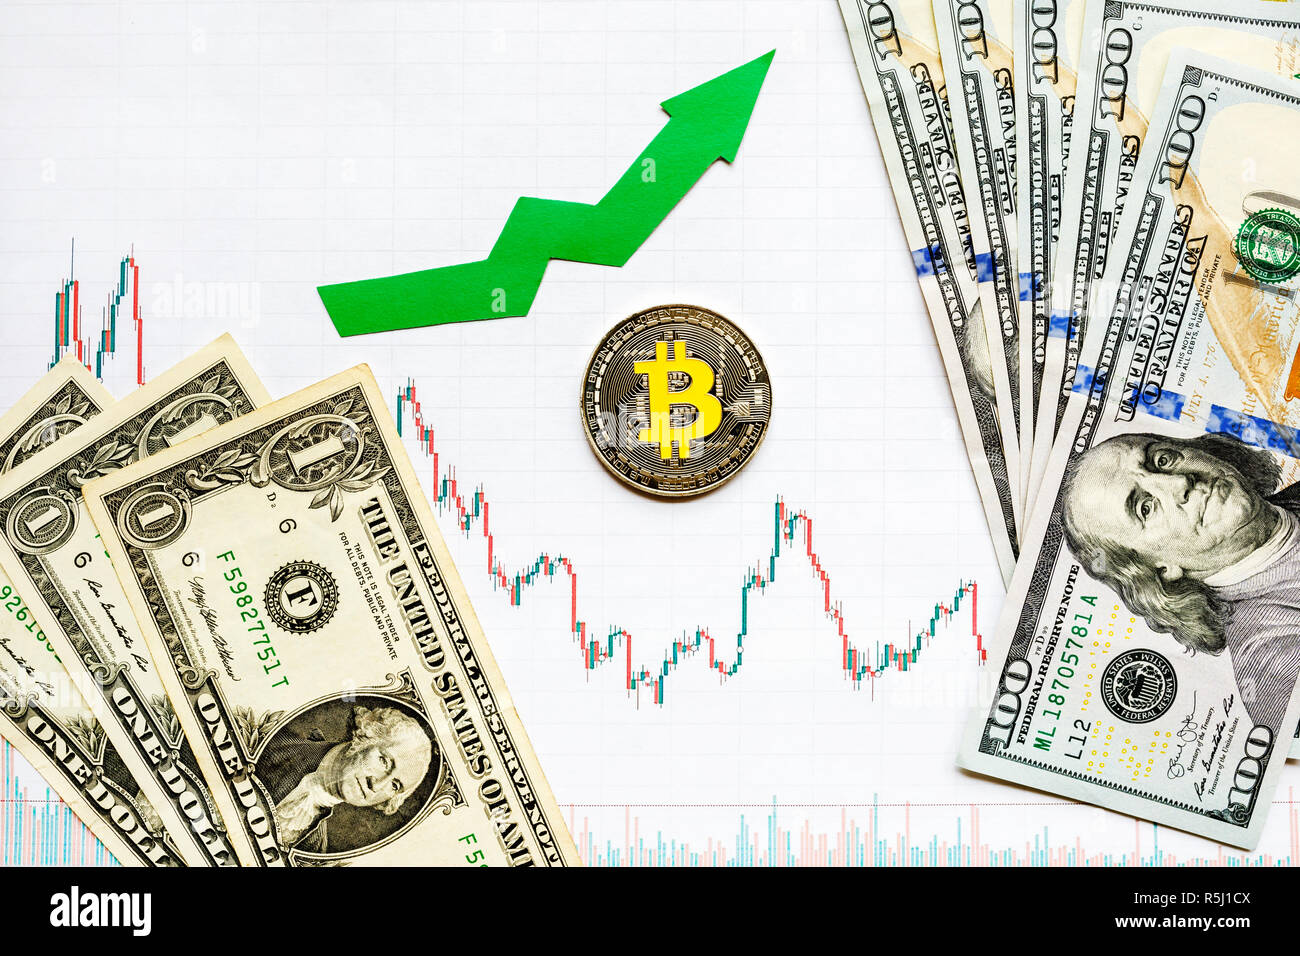 Inversión rentable de dinero virtual bitcoin. Flecha verde y plata sobre papel Bitcoin gráfico forex índice subir a fondo el mercado de divisas. Foto de stock